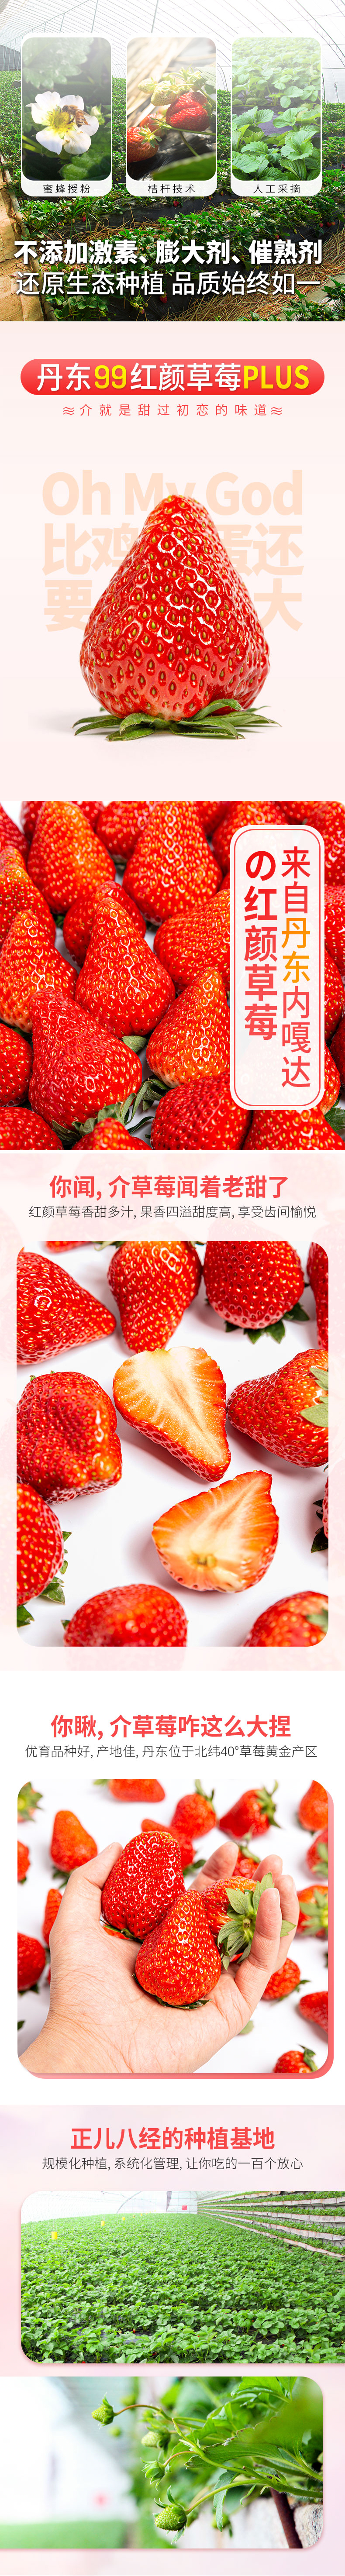 丹东草莓.jpg